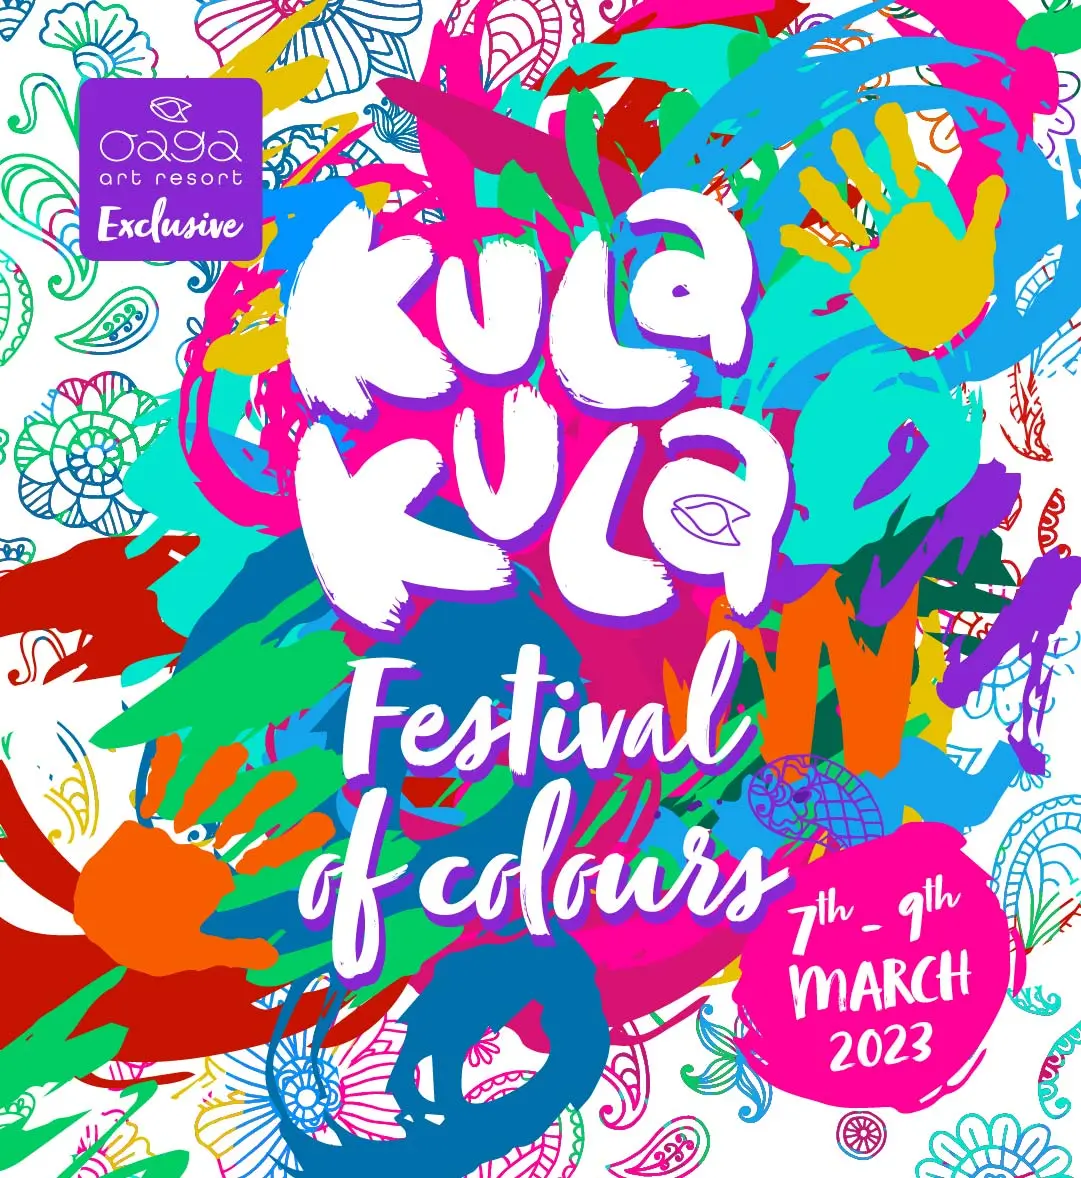 Kula Kula Festival of colours